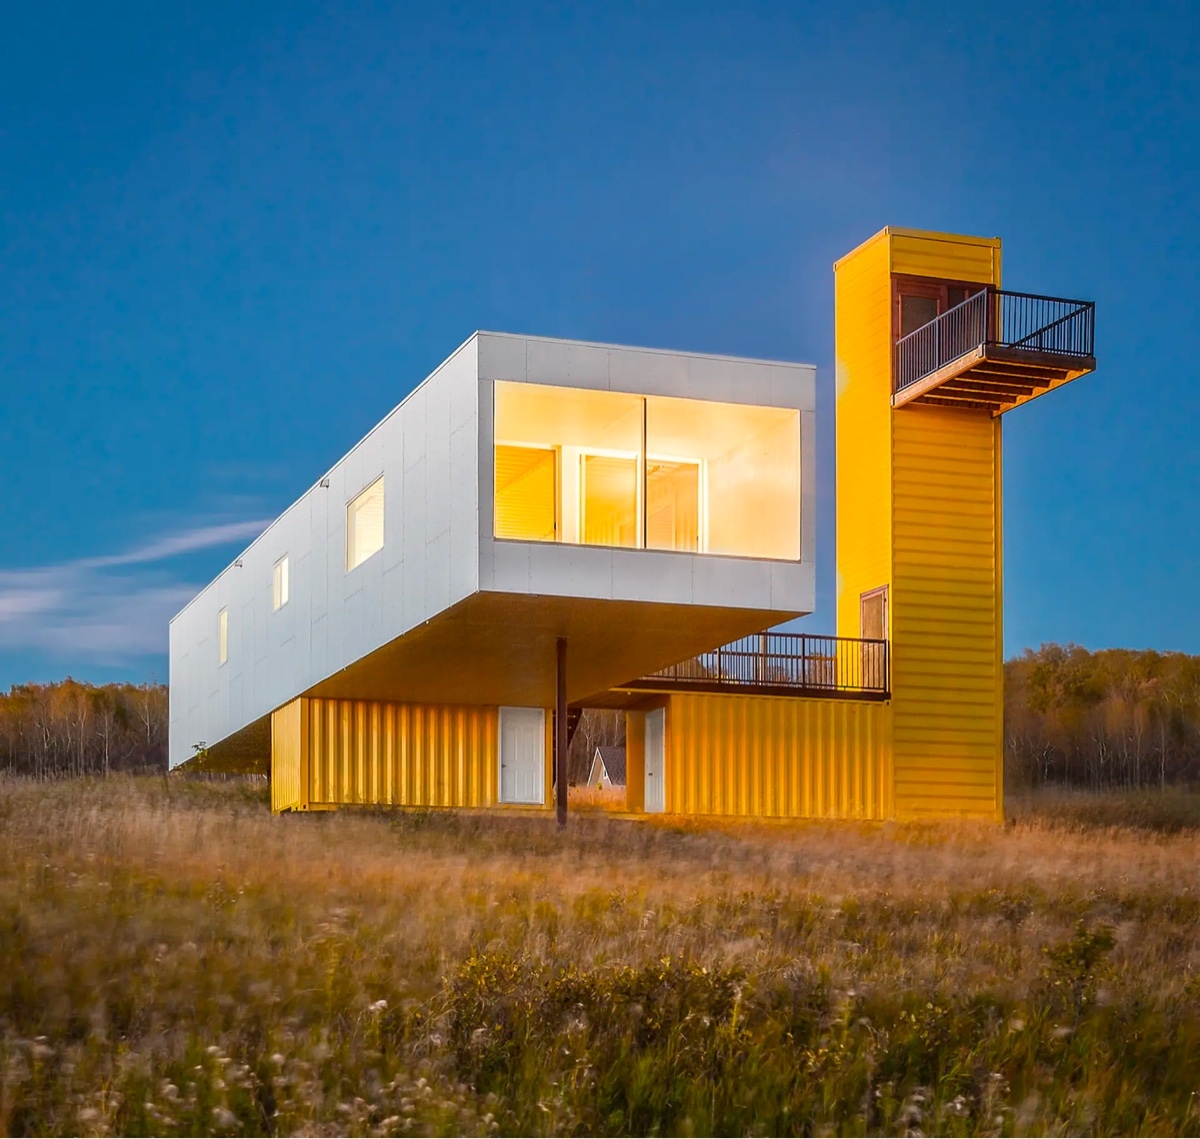 Cận cảnh những căn nhà được tạo hình siêu đẹp từ container - Ảnh 2.